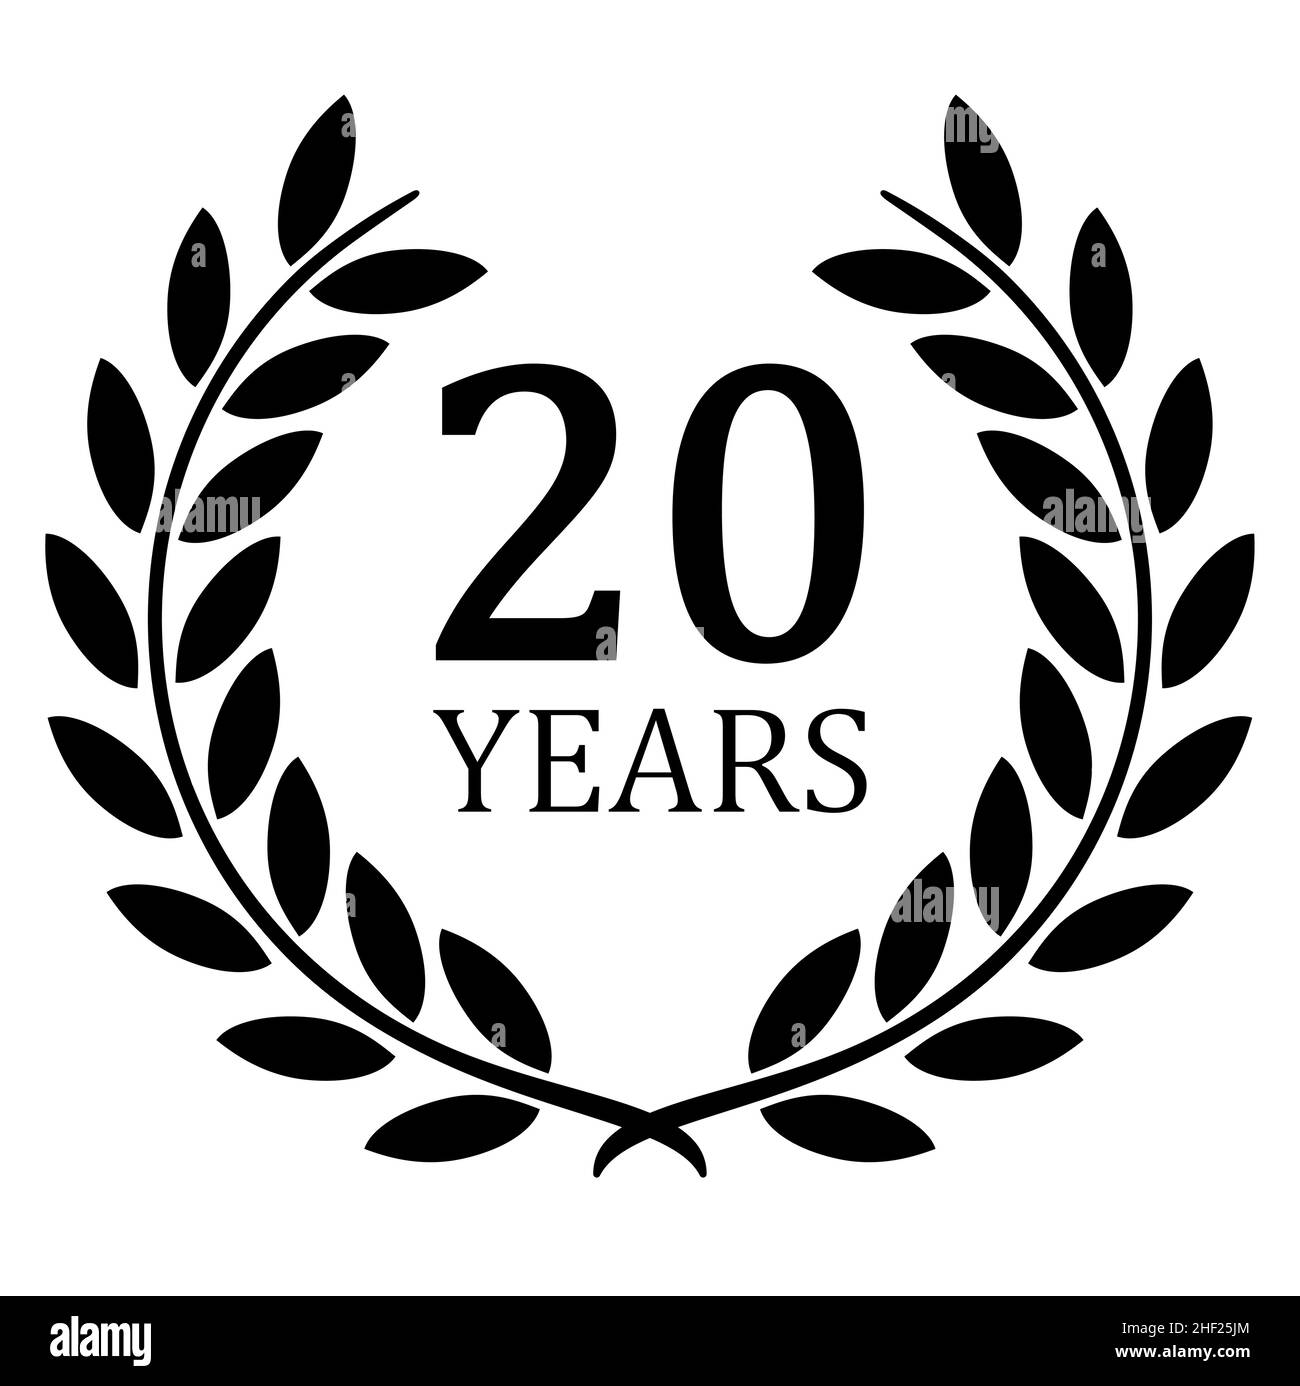 fichier vectoriel eps avec couronne de laurier noire sur fond blanc pour le succès ou jubilé ferme avec texte 20 ans Illustration de Vecteur